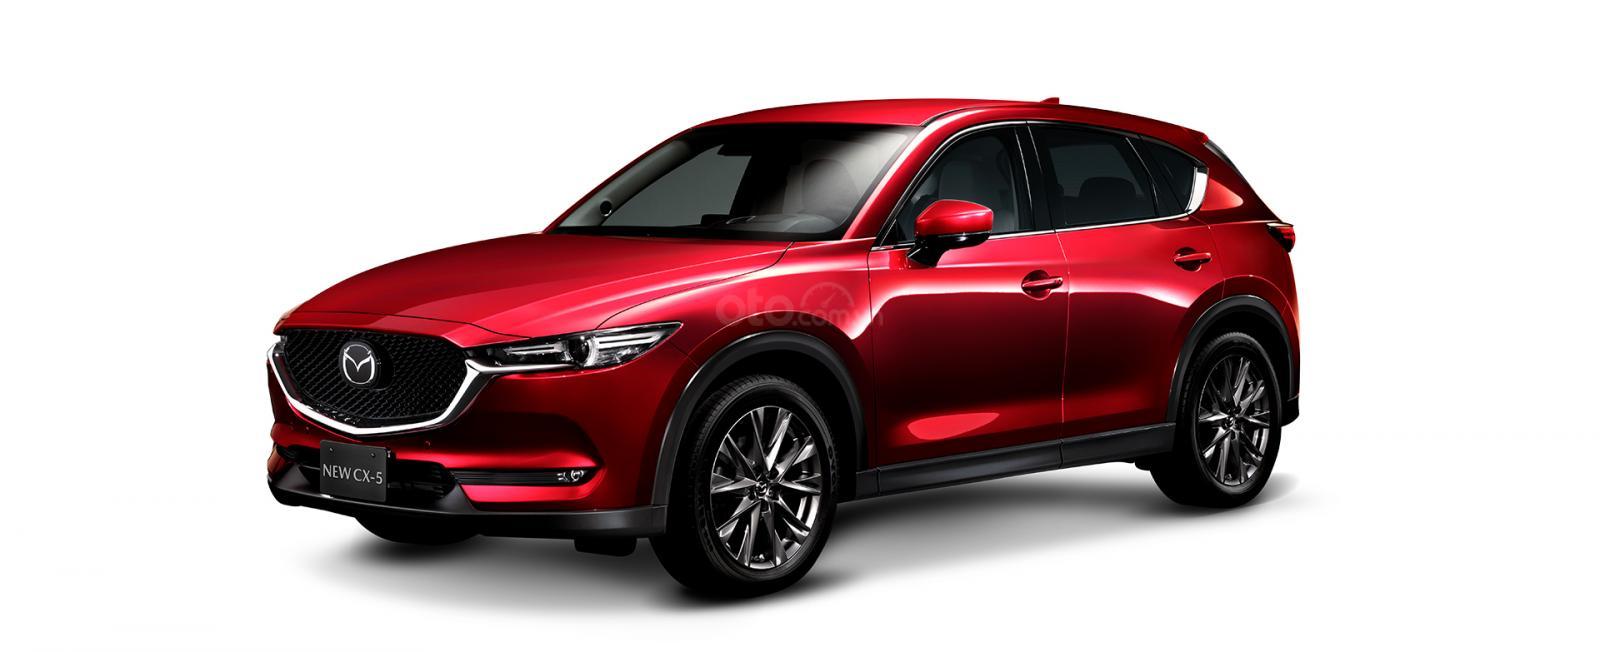 Đánh giá xe Mazda CX-5 2019: Màu Đỏ.